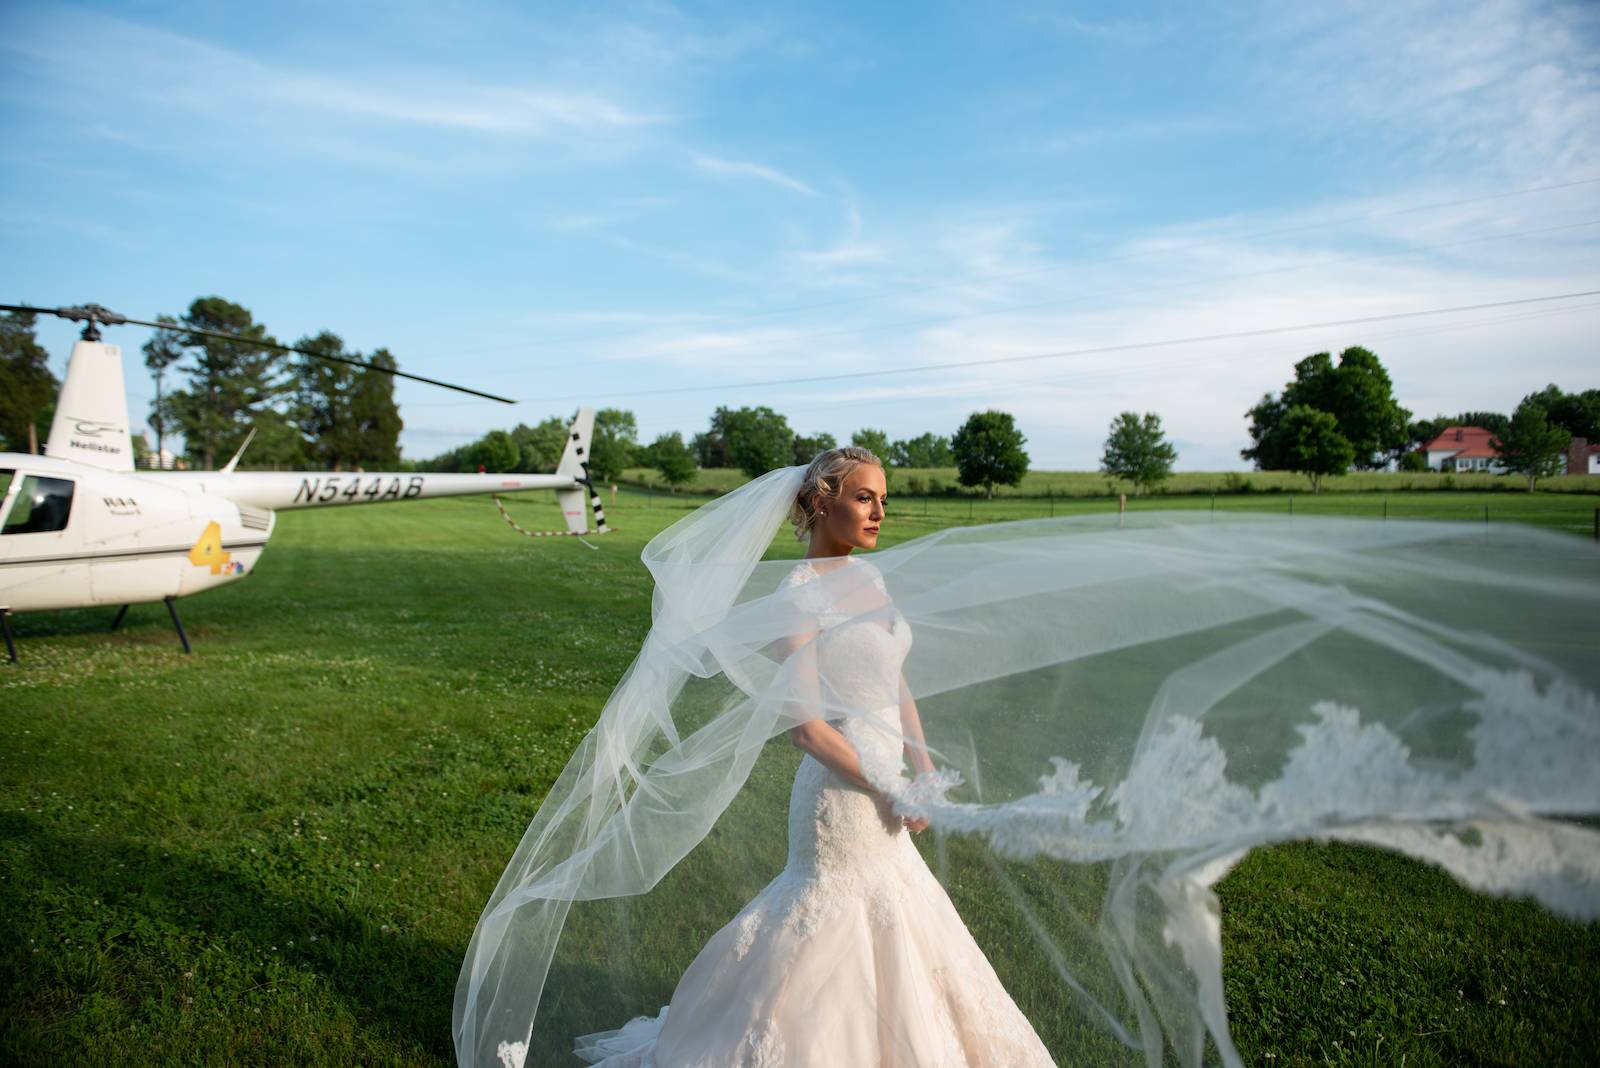 Nashville Helicopter Wedding by Kathy Thomas Photography |  Nashville